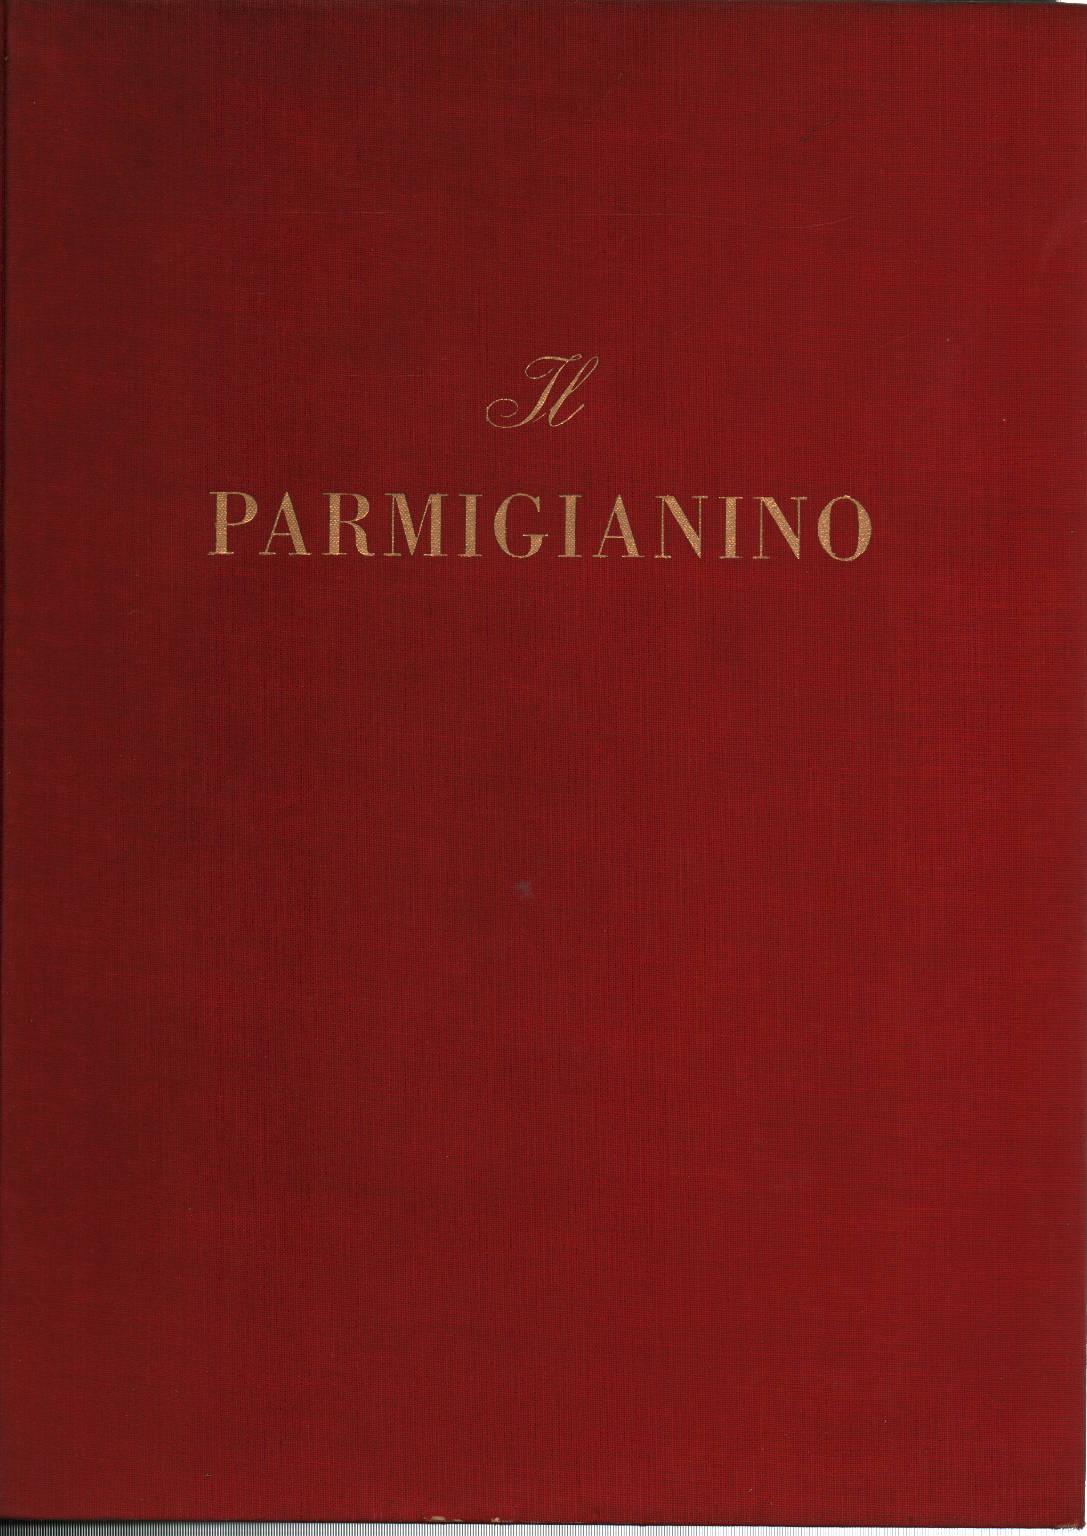 Das Parmigianino, Armando Ottaviano Quintavalle